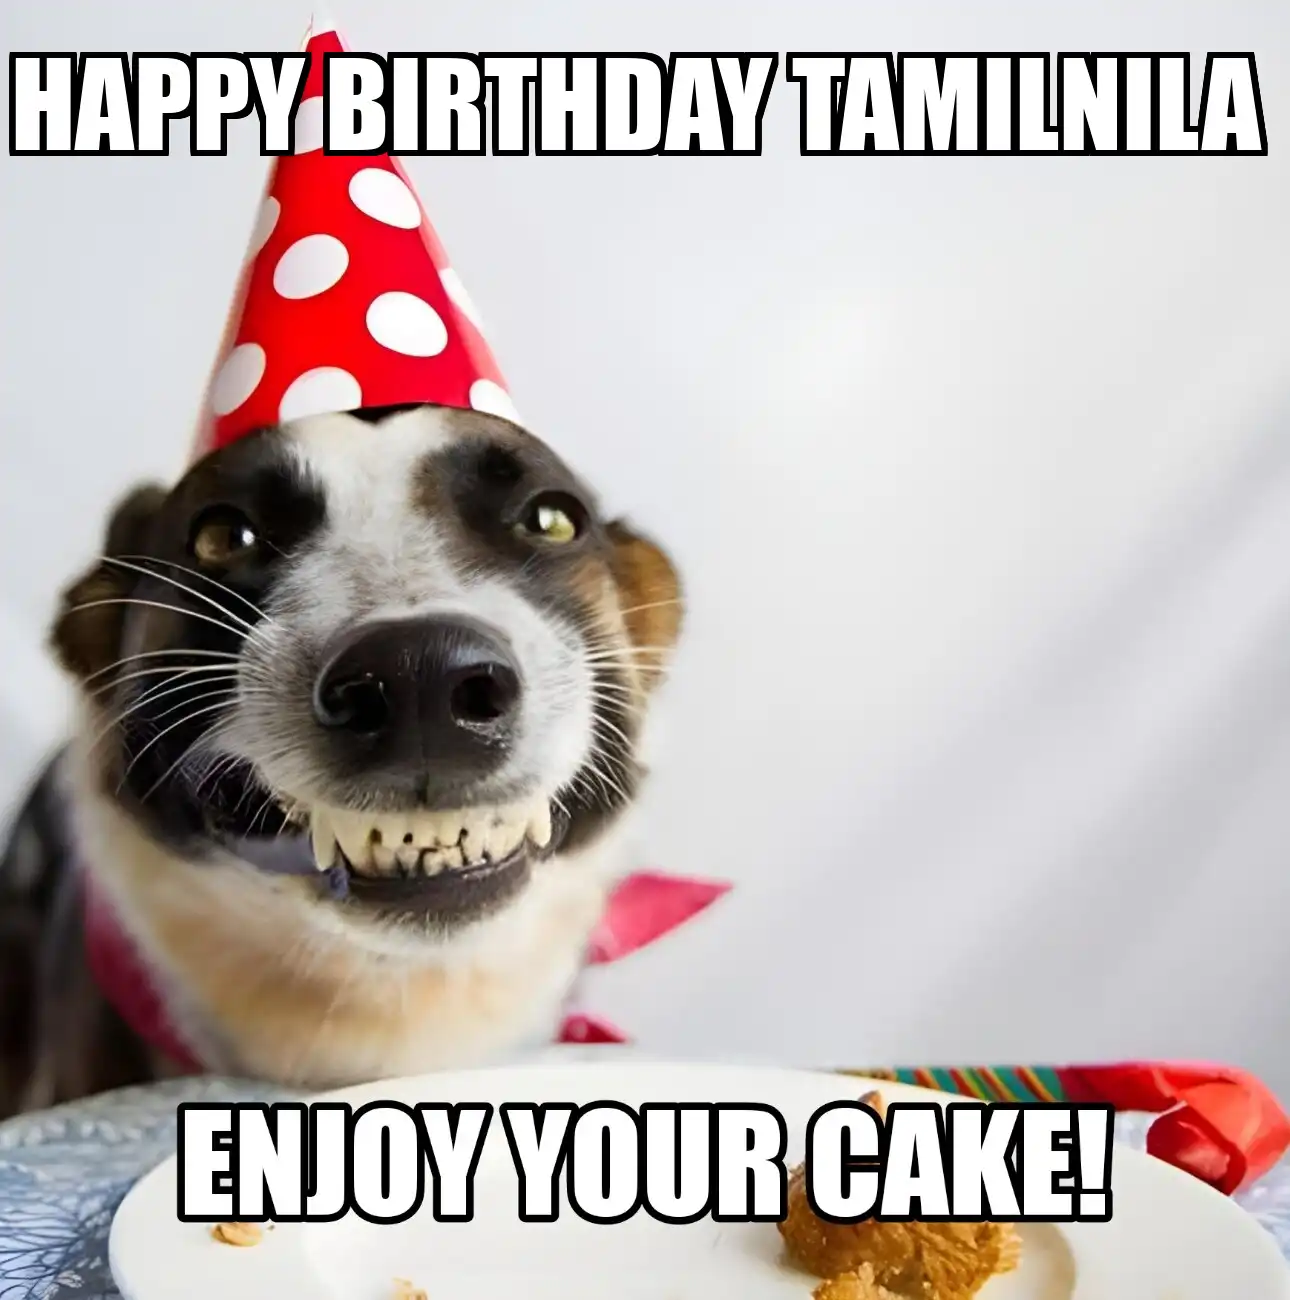 Happy Birthday Tamilnila Enjoy Your Cake Dog Meme